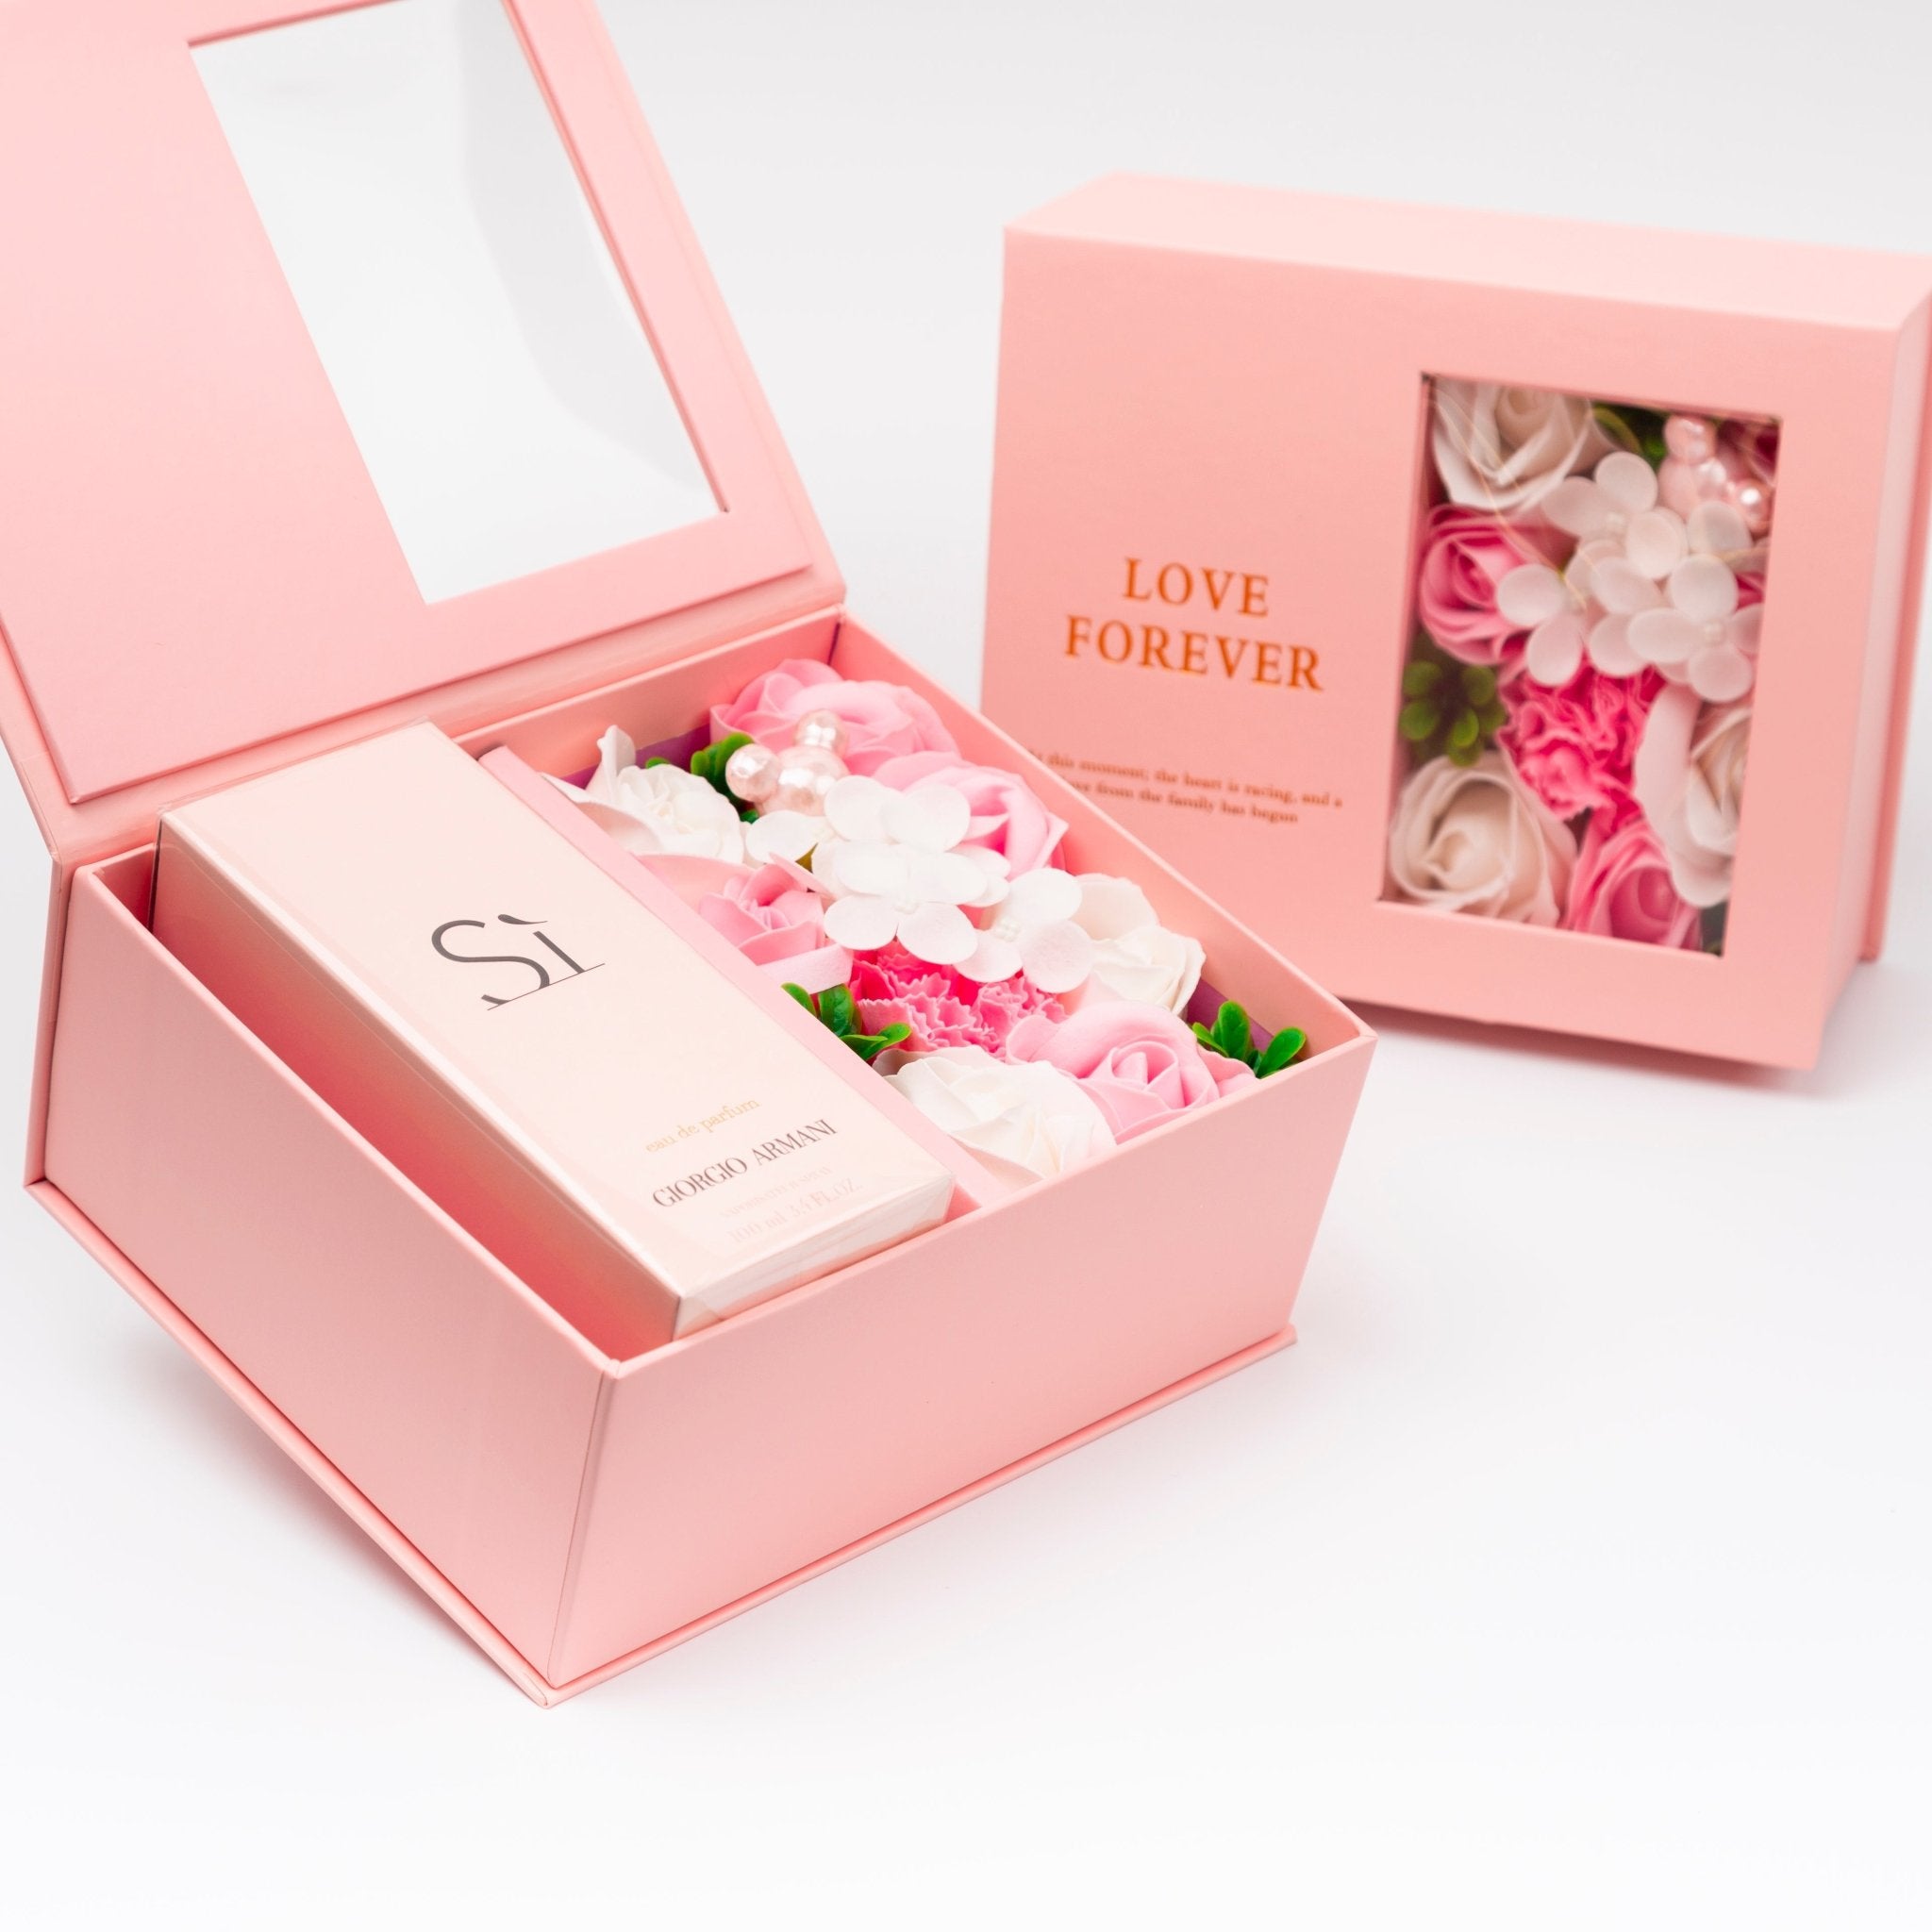 Flower Box - Perfume Gift For Women 28 - #shoFlower Box - Perfume Gift For Women 28p_name#Flower Box - Perfume Gift For Women 28Gift Boxes & TinsTakreemTakreem.joWomenPerfumeFlower Box - Perfume Gift For Women 28 - Takreem.jo